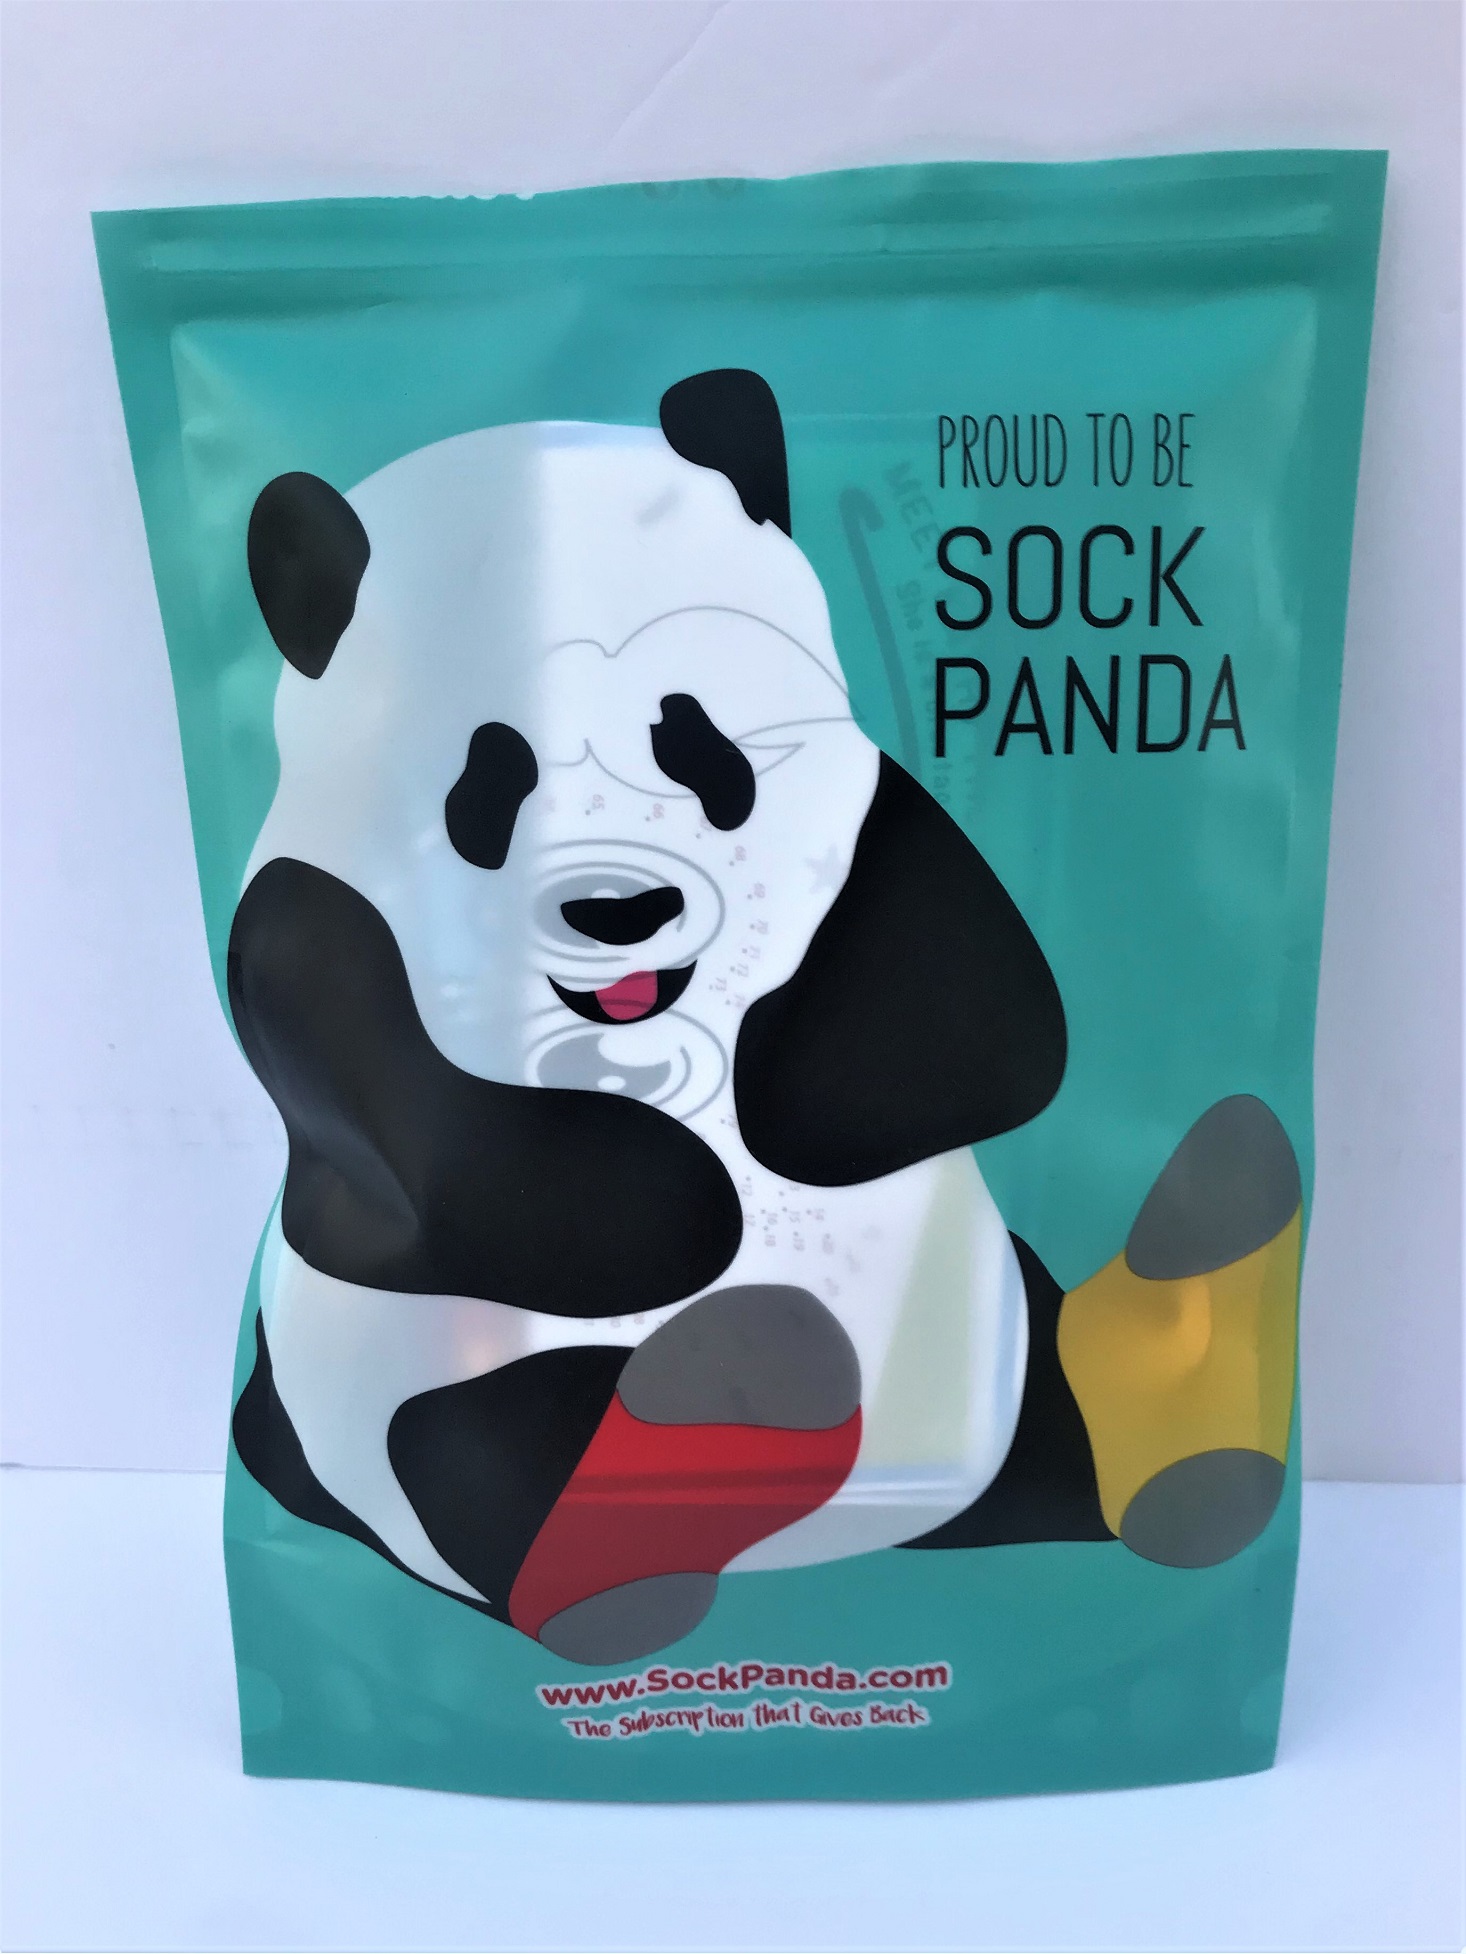 Panda Pals Kid’s Socks Subscription Review + Coupon – July 2019